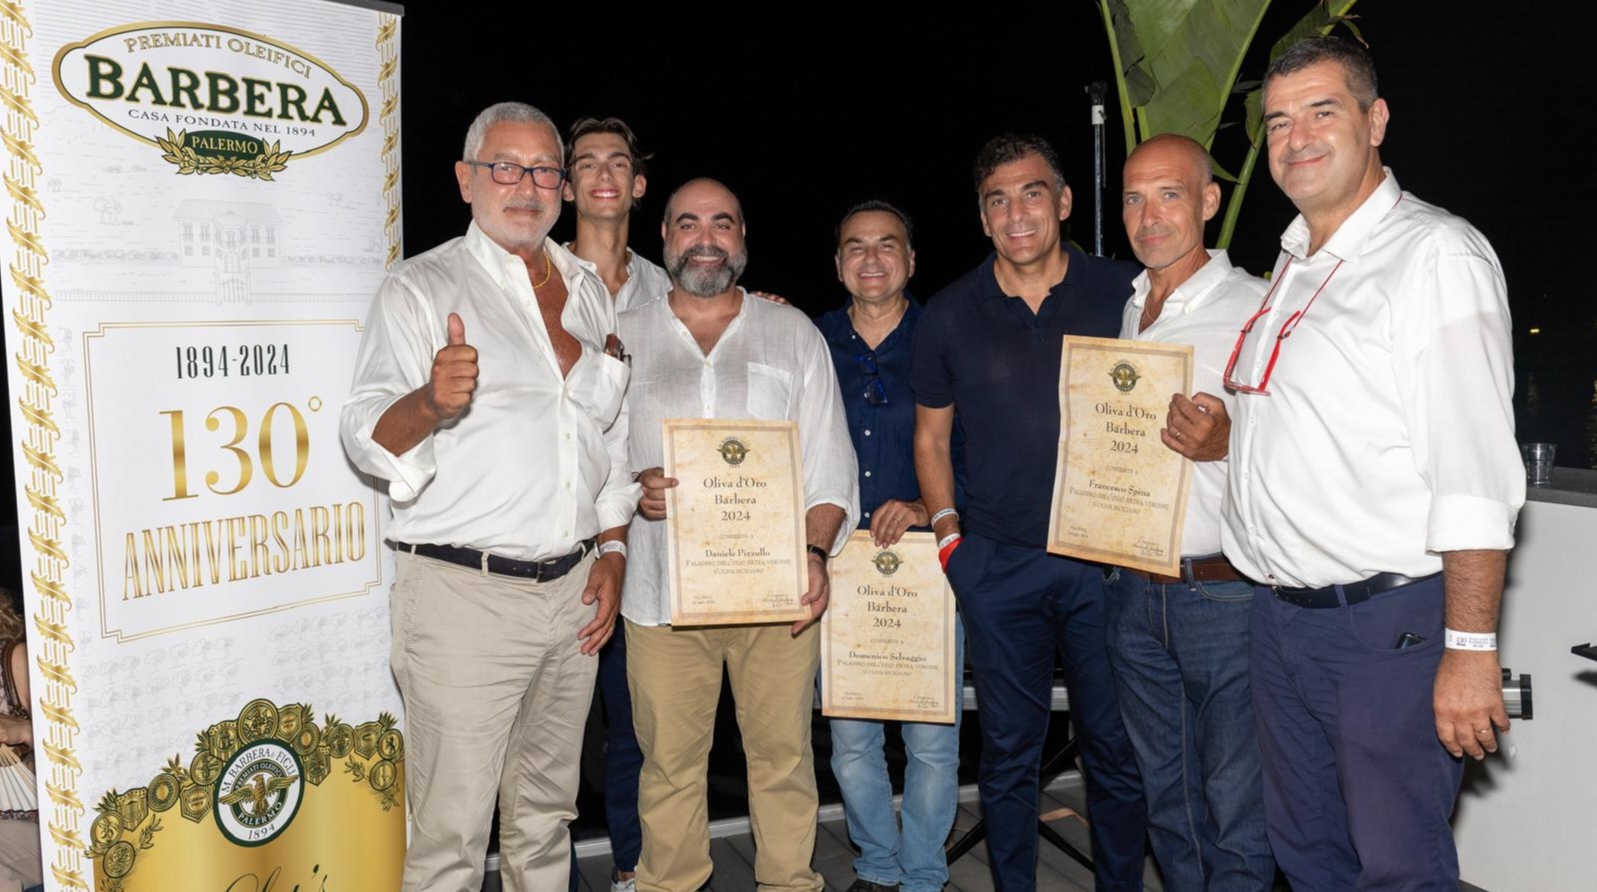 Oliva d’oro a dipendenti storici azienda Barbera: “La famiglia al centro del core business”